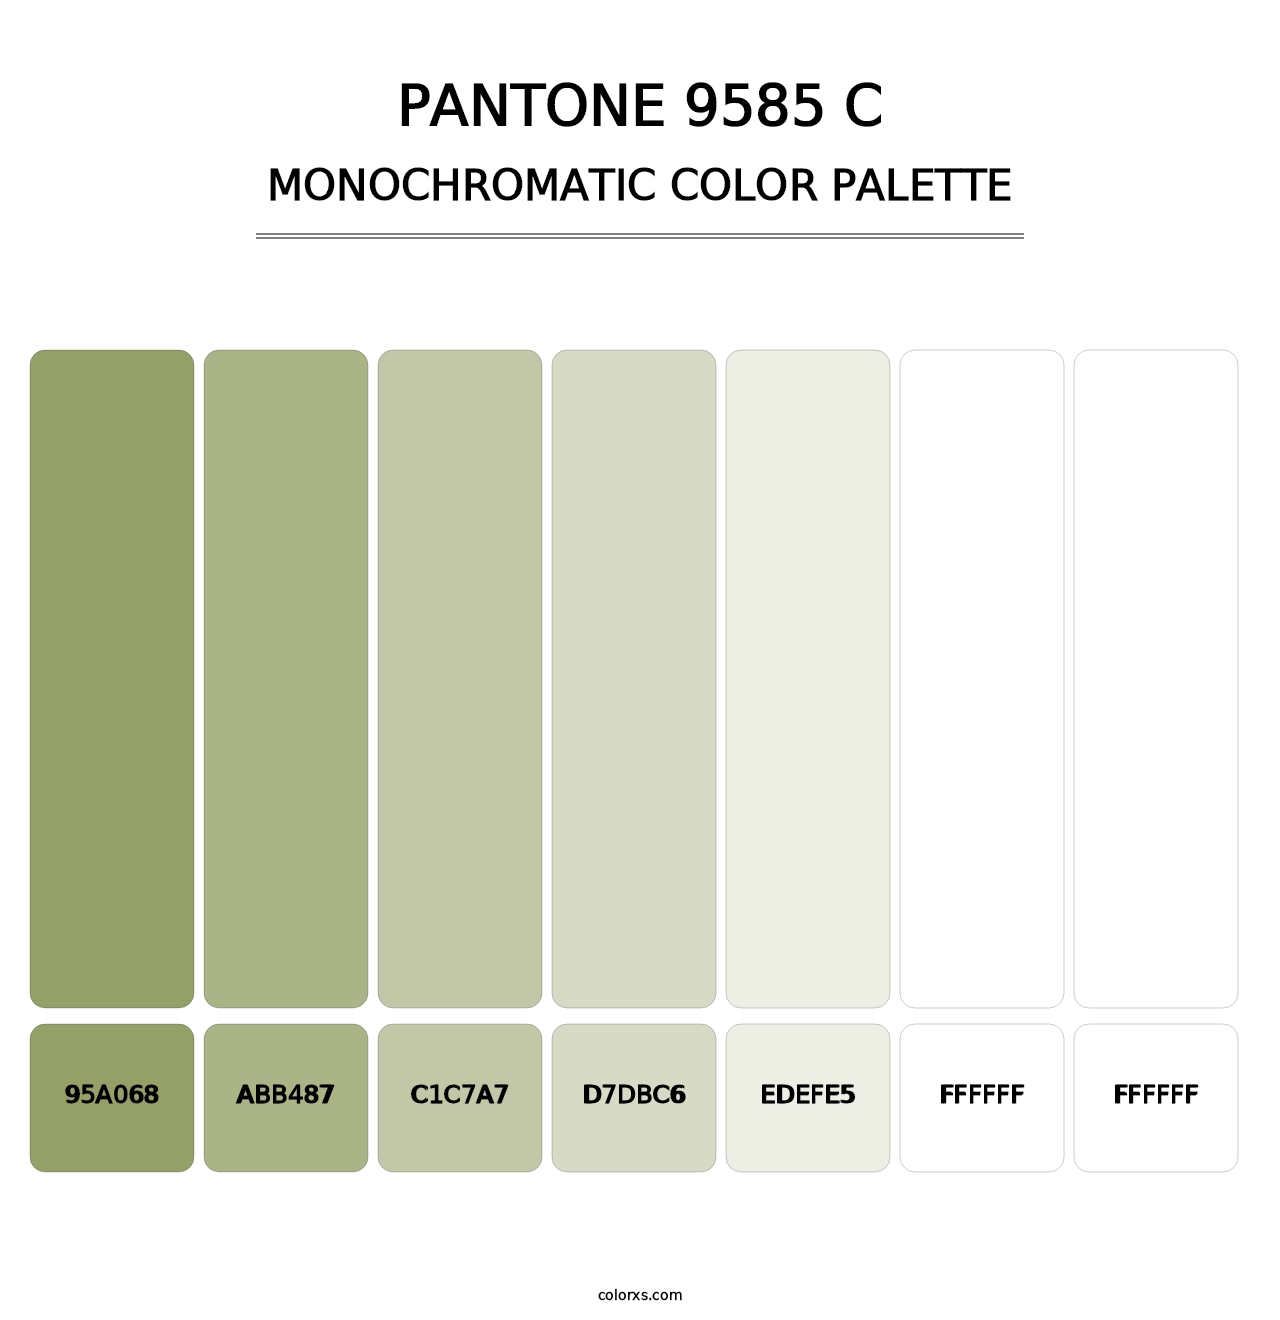 PANTONE 9585 C - Monochromatic Color Palette